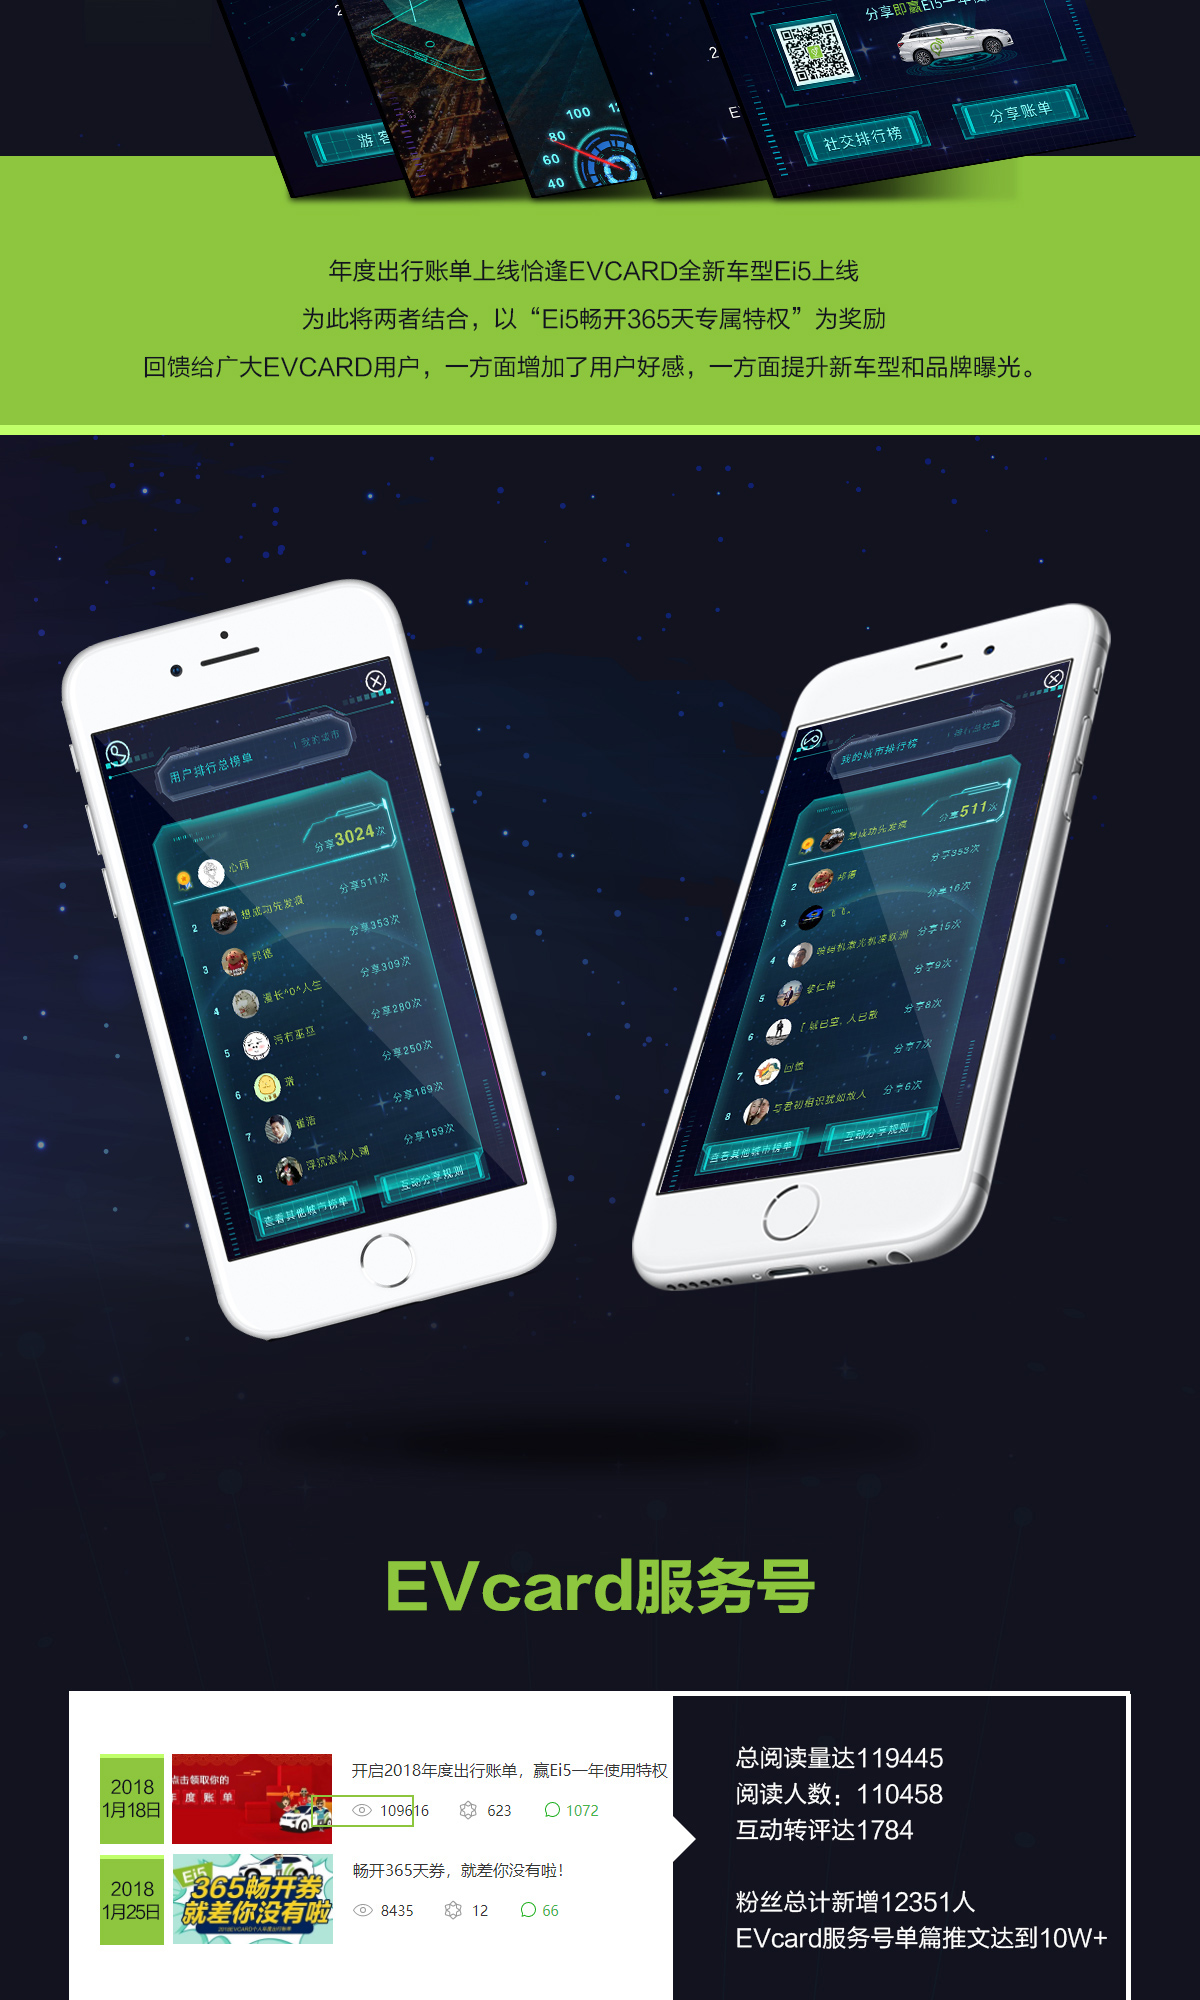 EVCARD互动式营销 2018#我们不一样#-新媒体营销,新媒体广告公司,上海网络营销,微信代运营,高端网站建设,网站建设公司